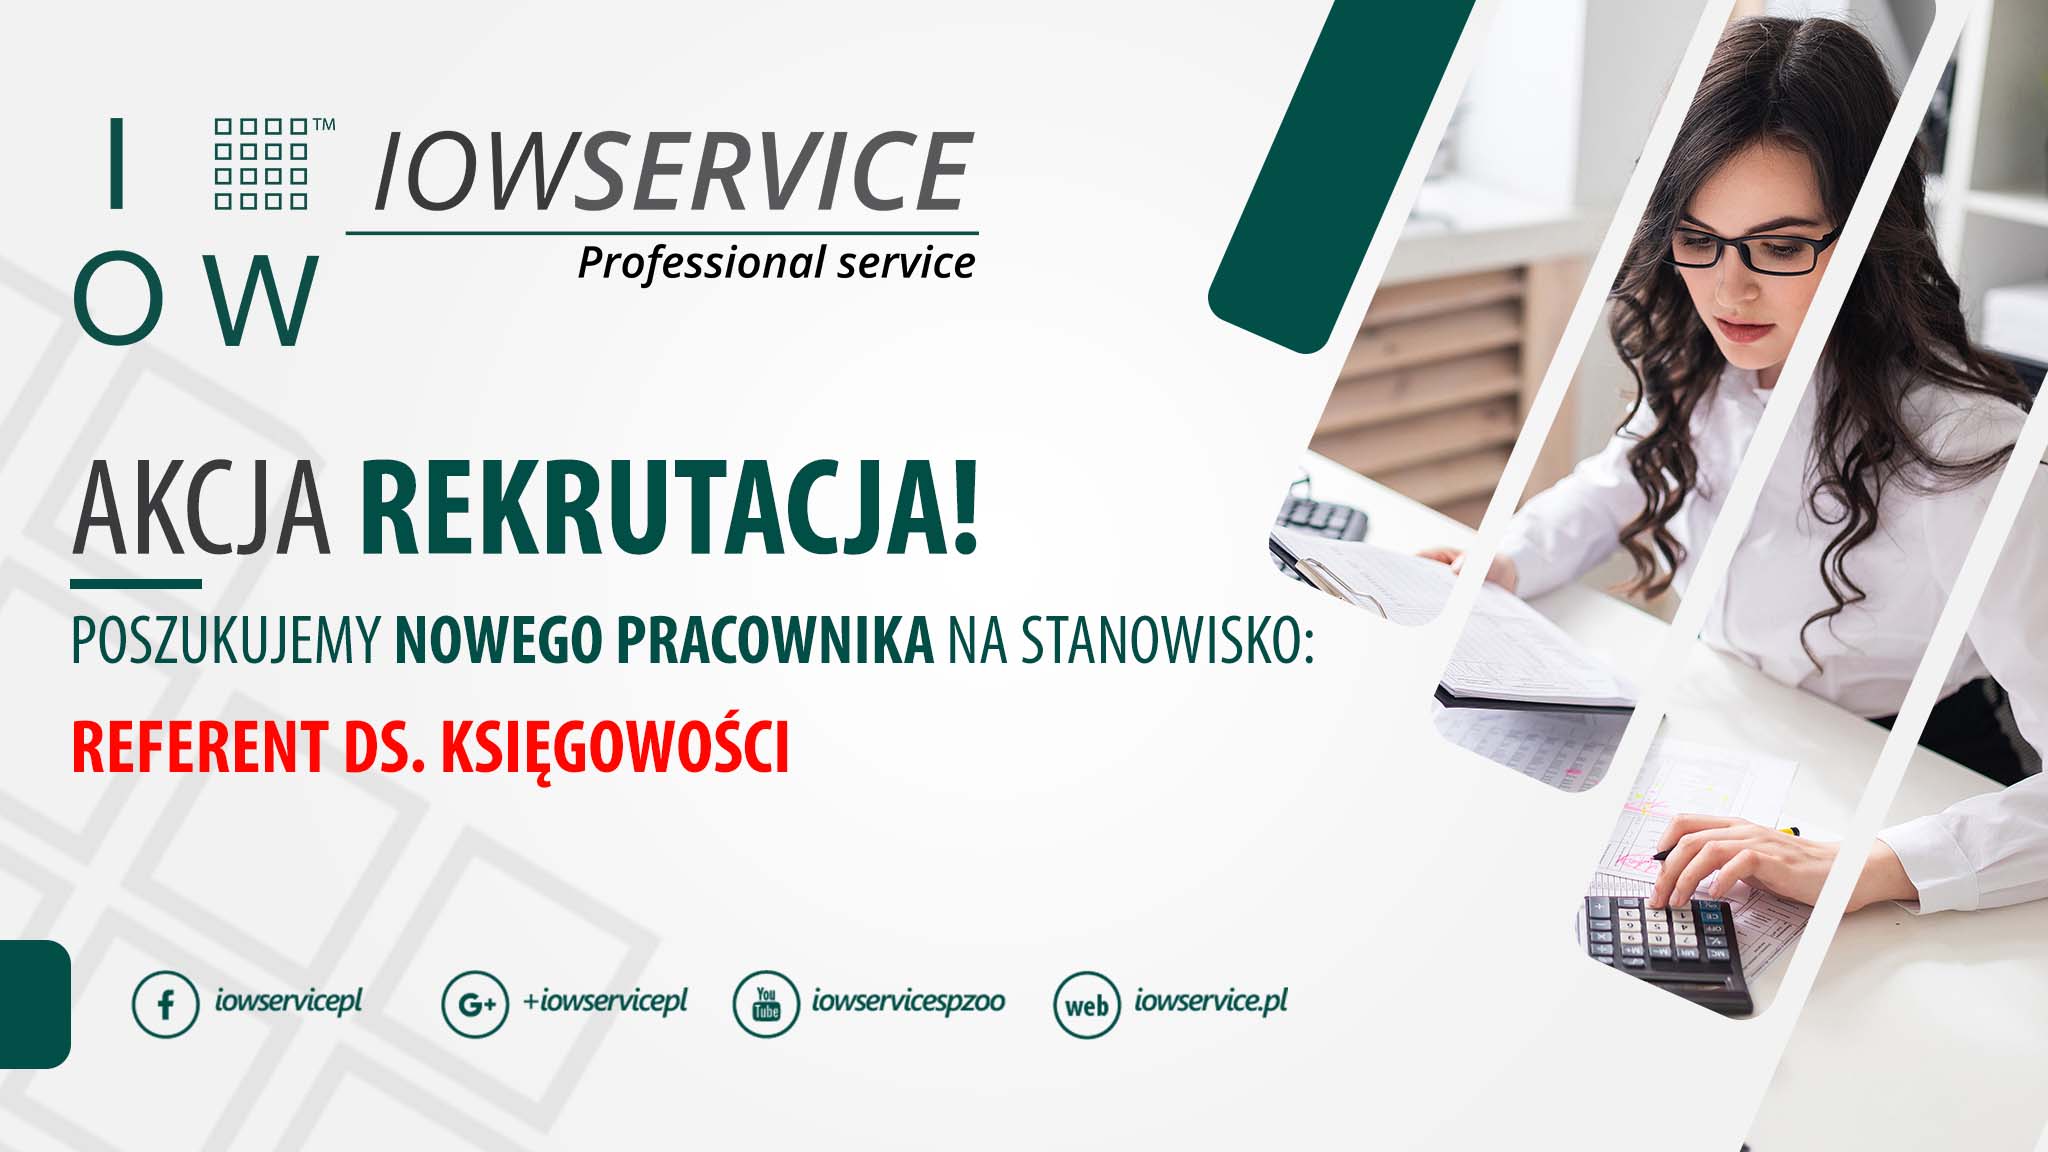 iow service